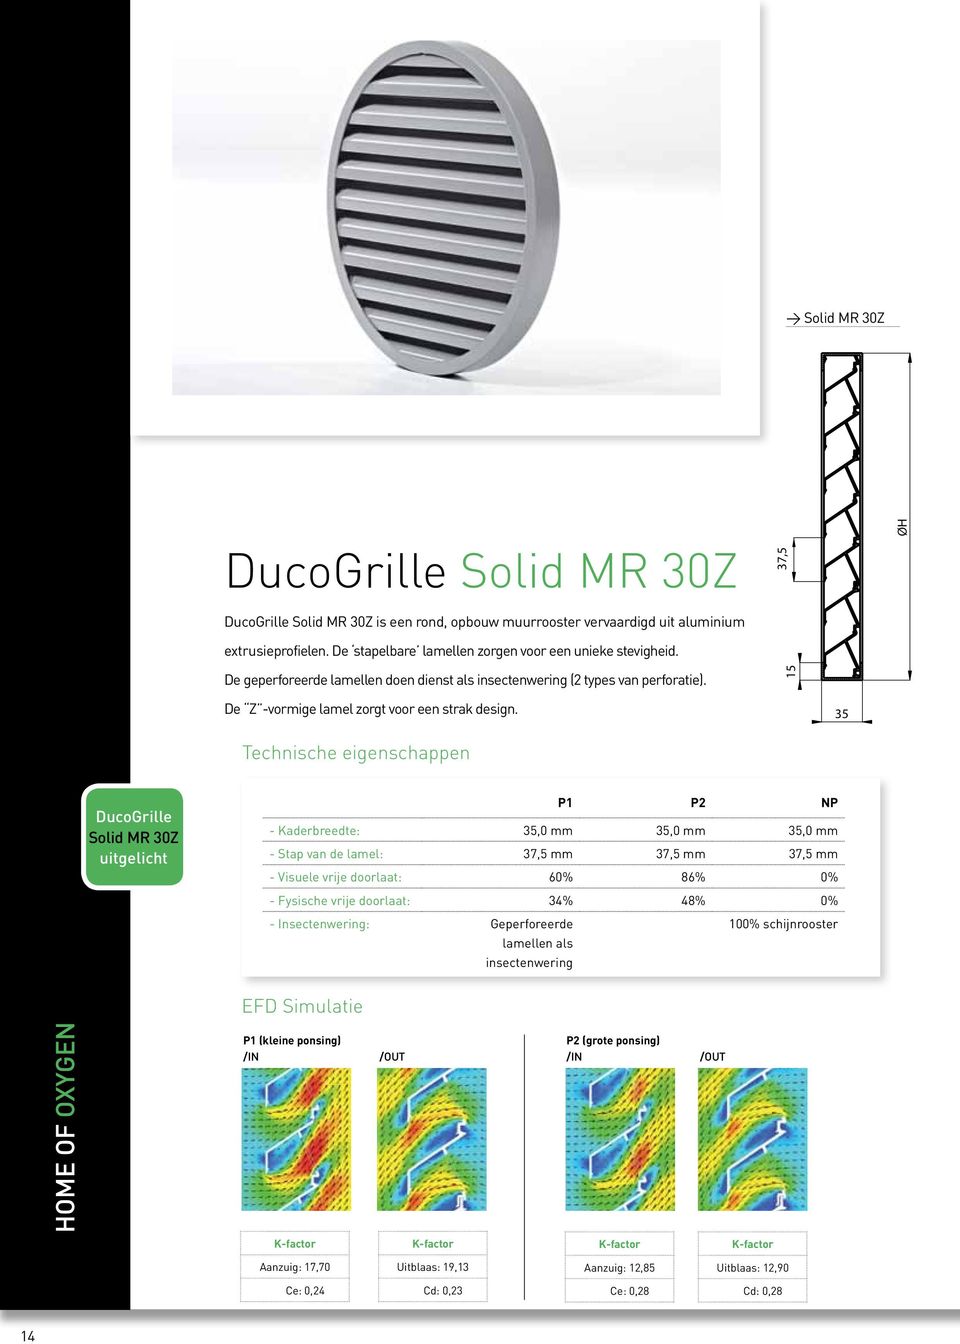 35 Technische eigenschappen DucoGrille Solid MR 30Z uitgelicht P1 P2 NP - Kaderbreedte: 35,0 mm 35,0 mm 35,0 mm - Stap van de lamel: 37,5 mm 37,5 mm 37,5 mm - Visuele vrije doorlaat: 60% 86% 0% -